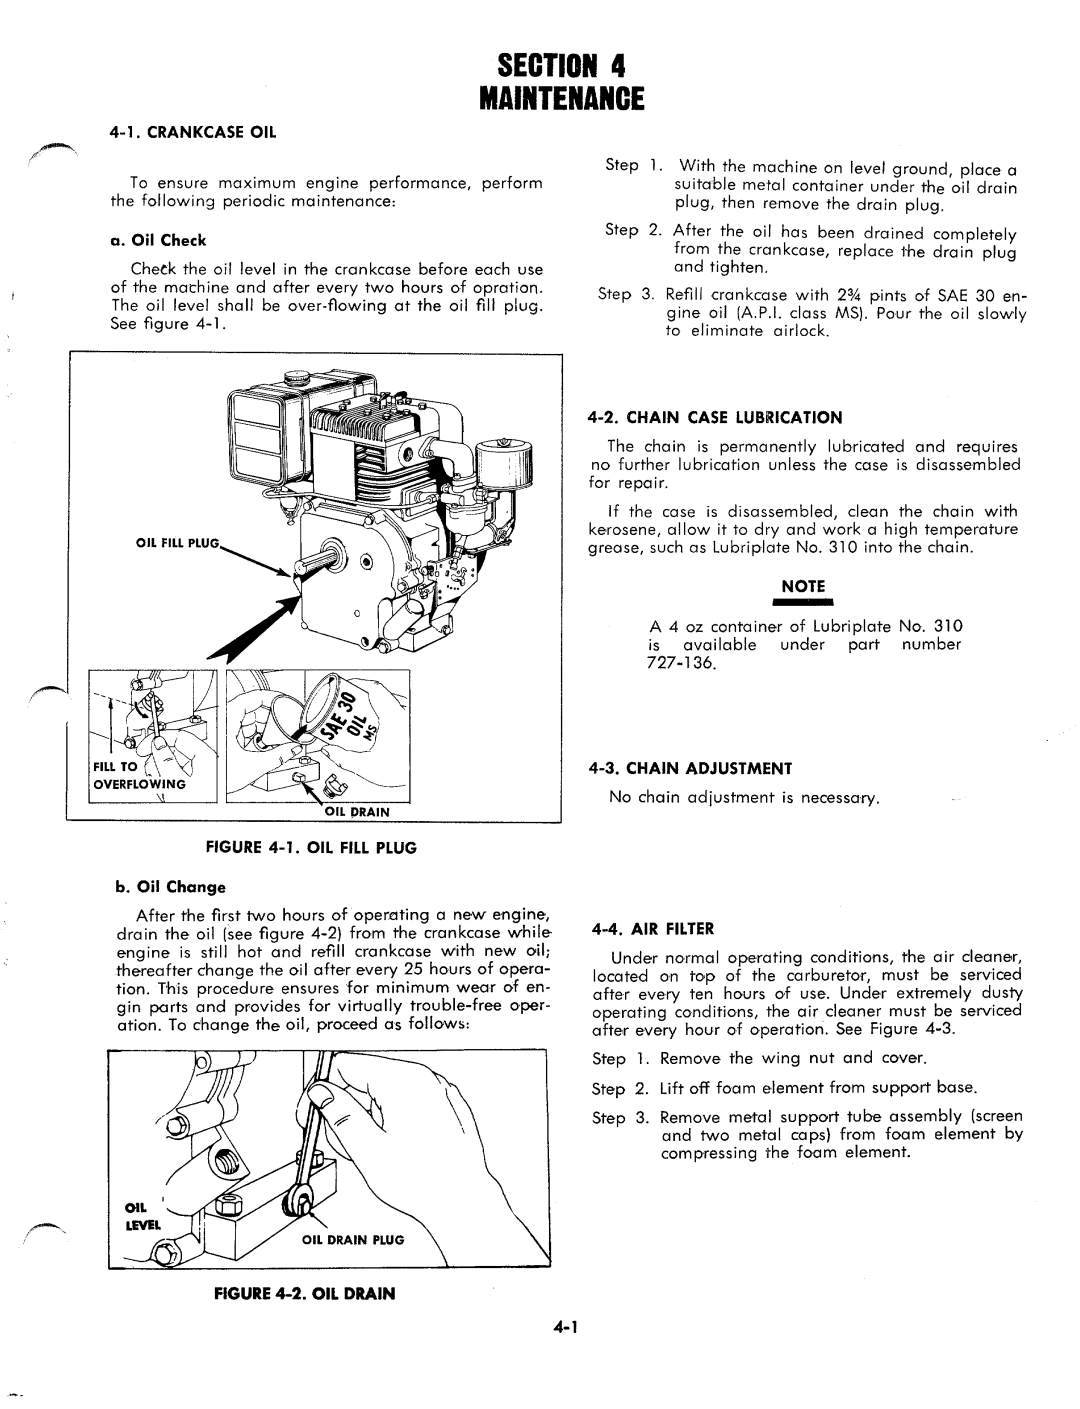 MTD 1850 manual 